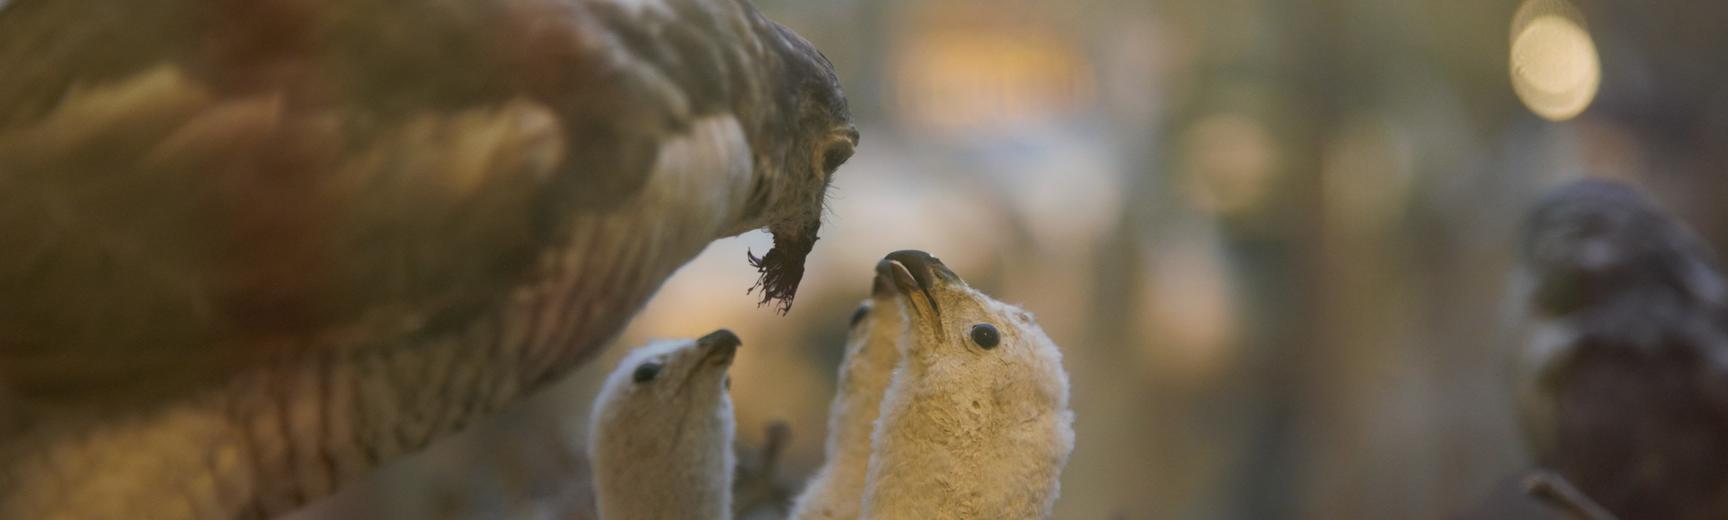 Taxidermy cuckoo feeding her chicks.